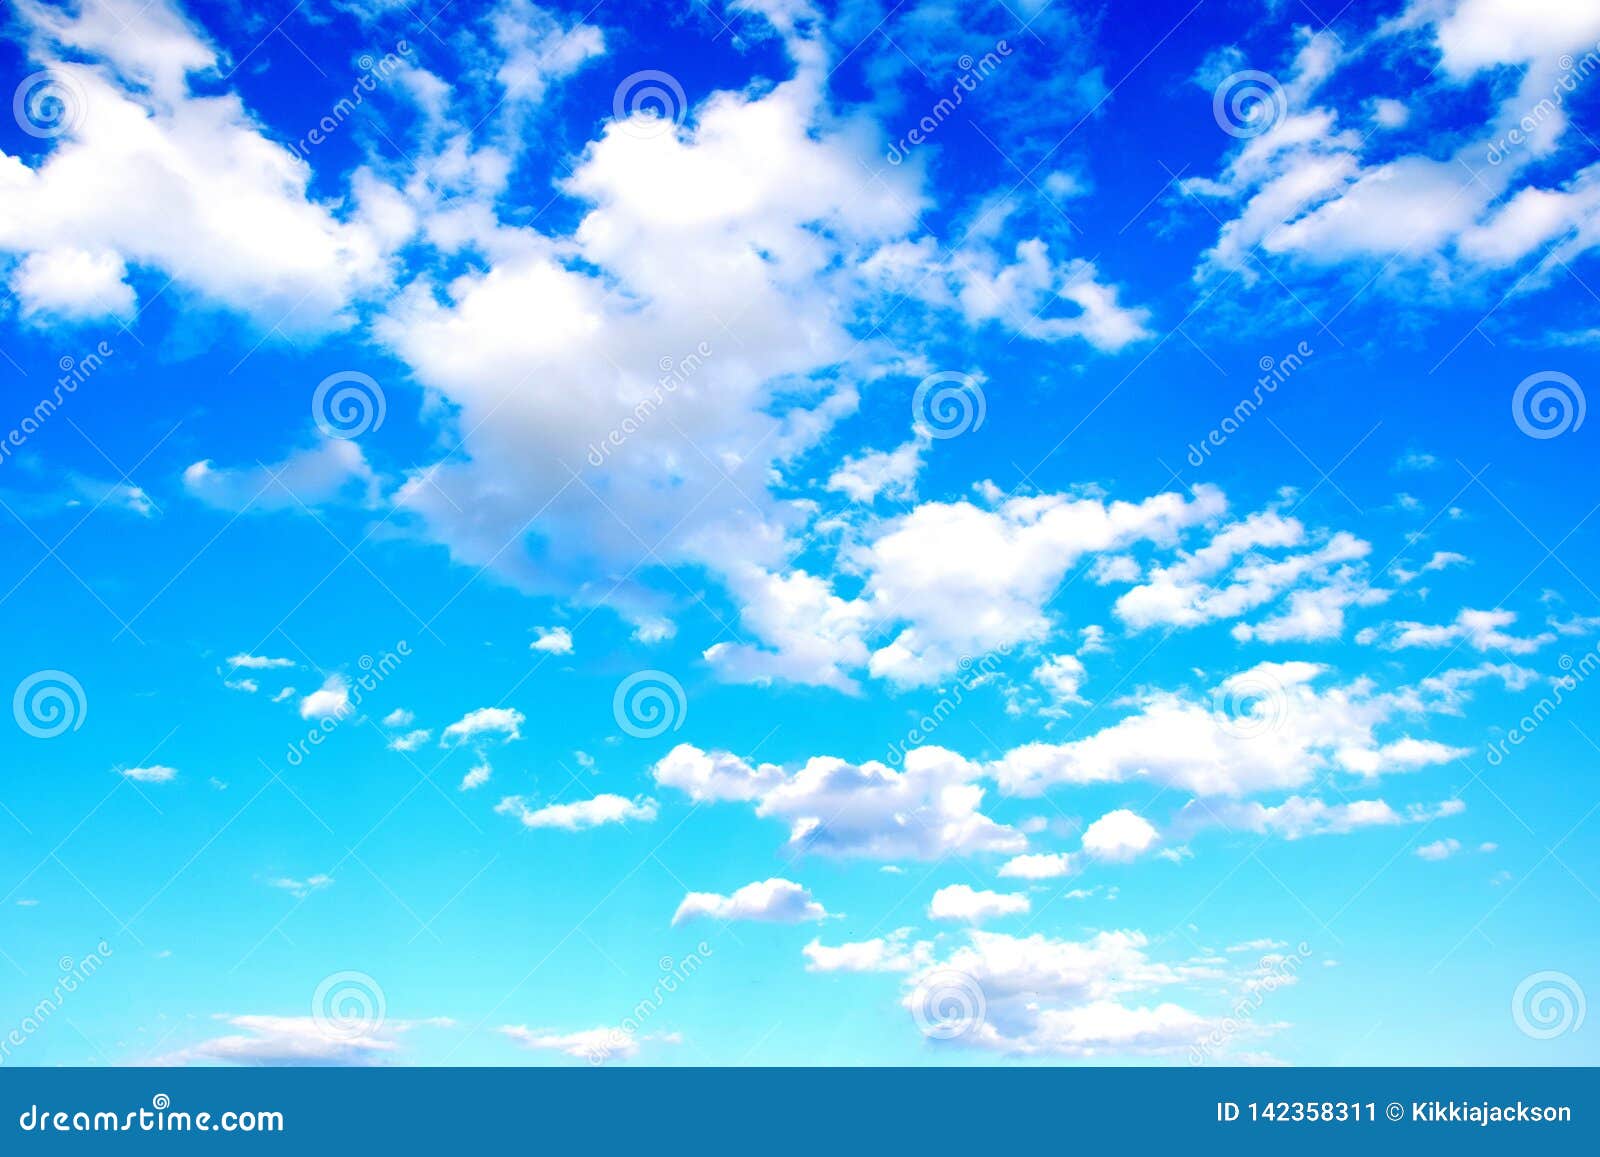 Nếu bạn yêu thích cảnh đẹp của mặt trời lặn và mây trắng thơ mộng, hãy thử sức với hình nền cảnh đẹp màu xanh da trời với mây trắng. Với sự kết hợp giữa màu sắc tươi mới và cảnh quan hùng vĩ, bạn sẽ nhận được một hình nền đẹp và lạ mắt để áp dụng cho trang web của mình.